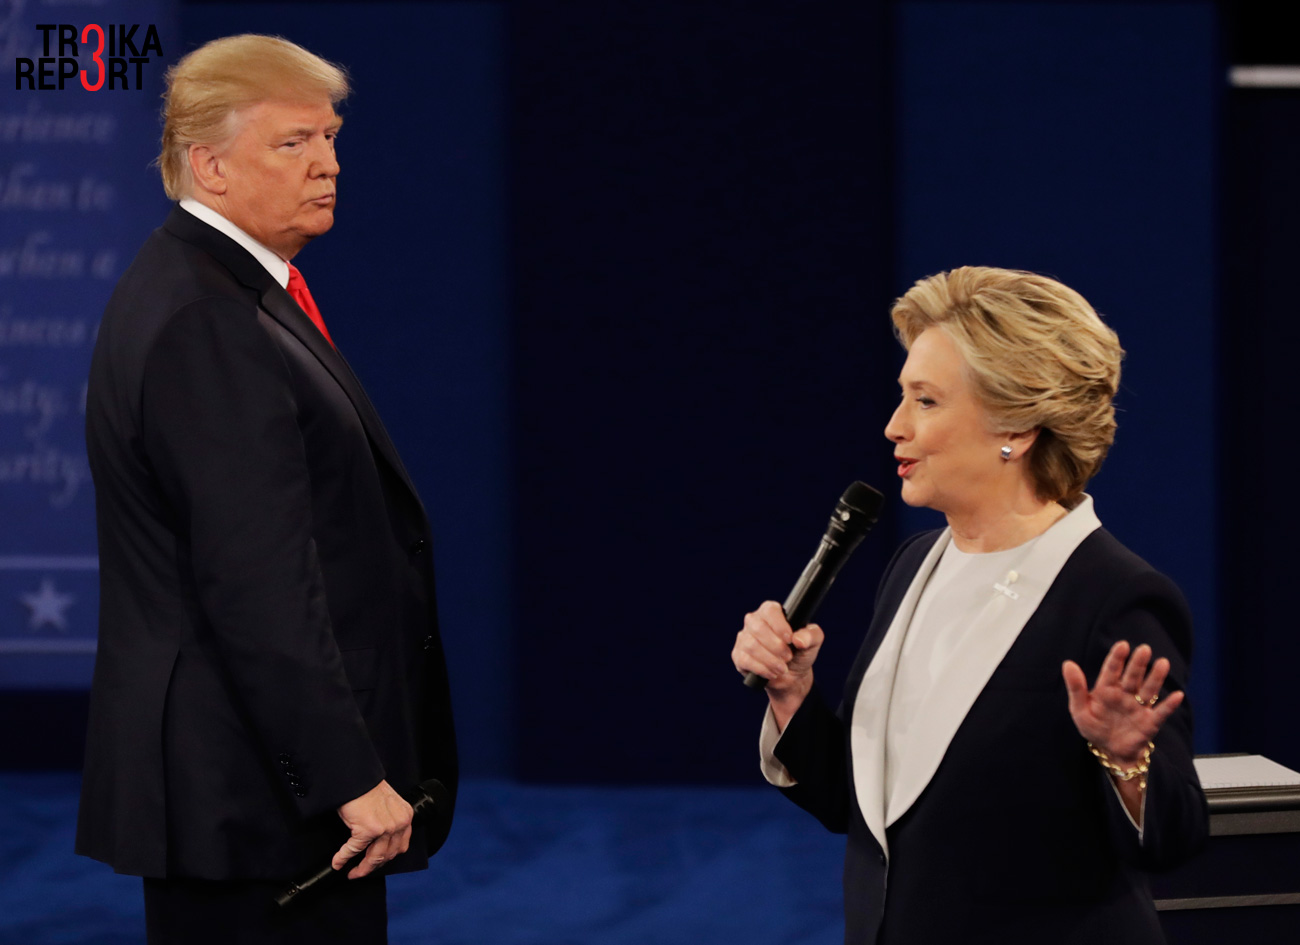 Posnetek z druge predvolilne debate med Donaldom Trumpom in Hillary Clinton. Ta je potekala na univerzi Washington v mestu St. Louis.